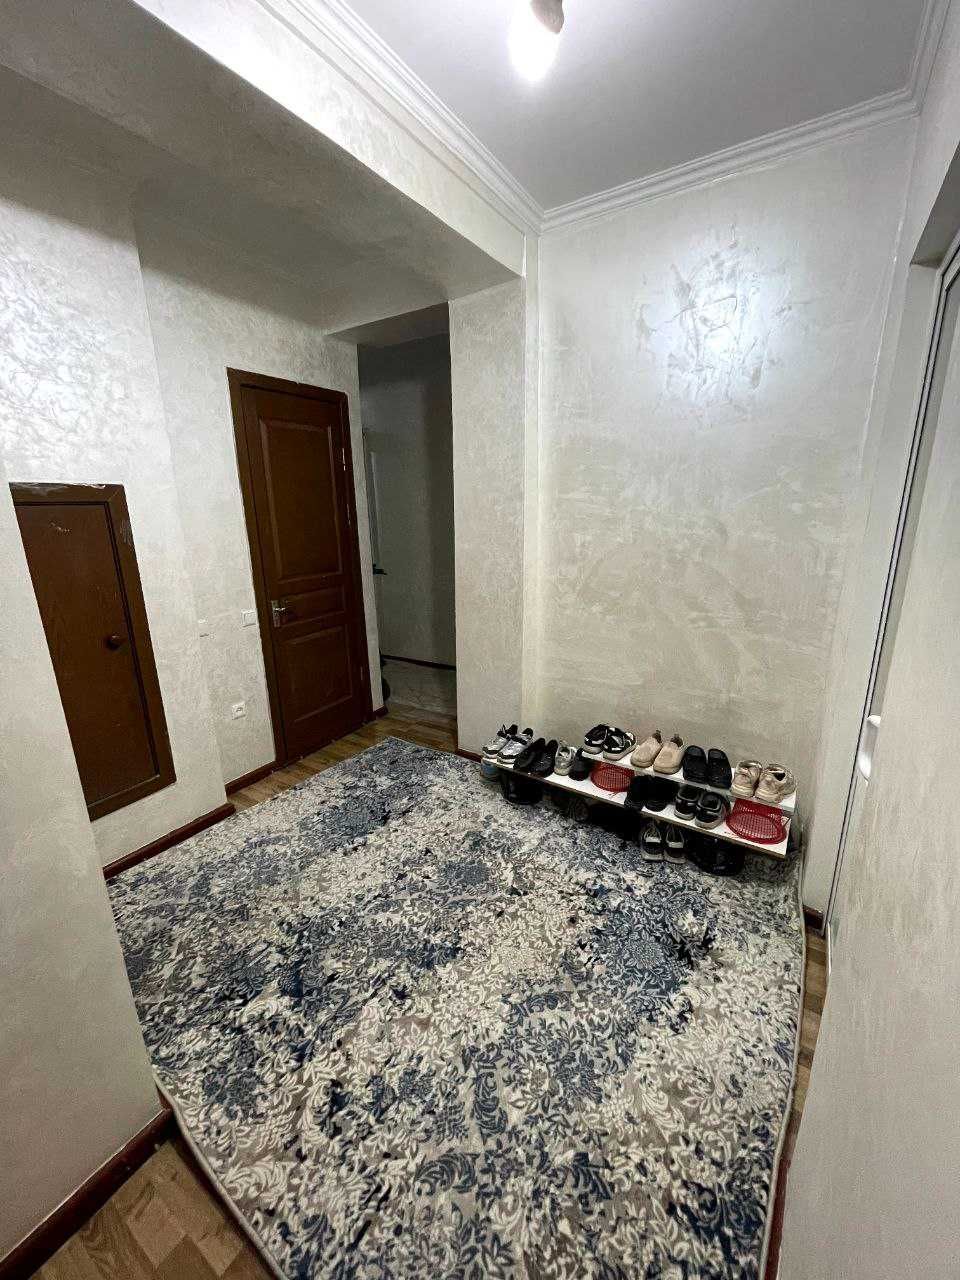 Квартира 3-комнатная в Яшнабадском районе, 40 лет победы